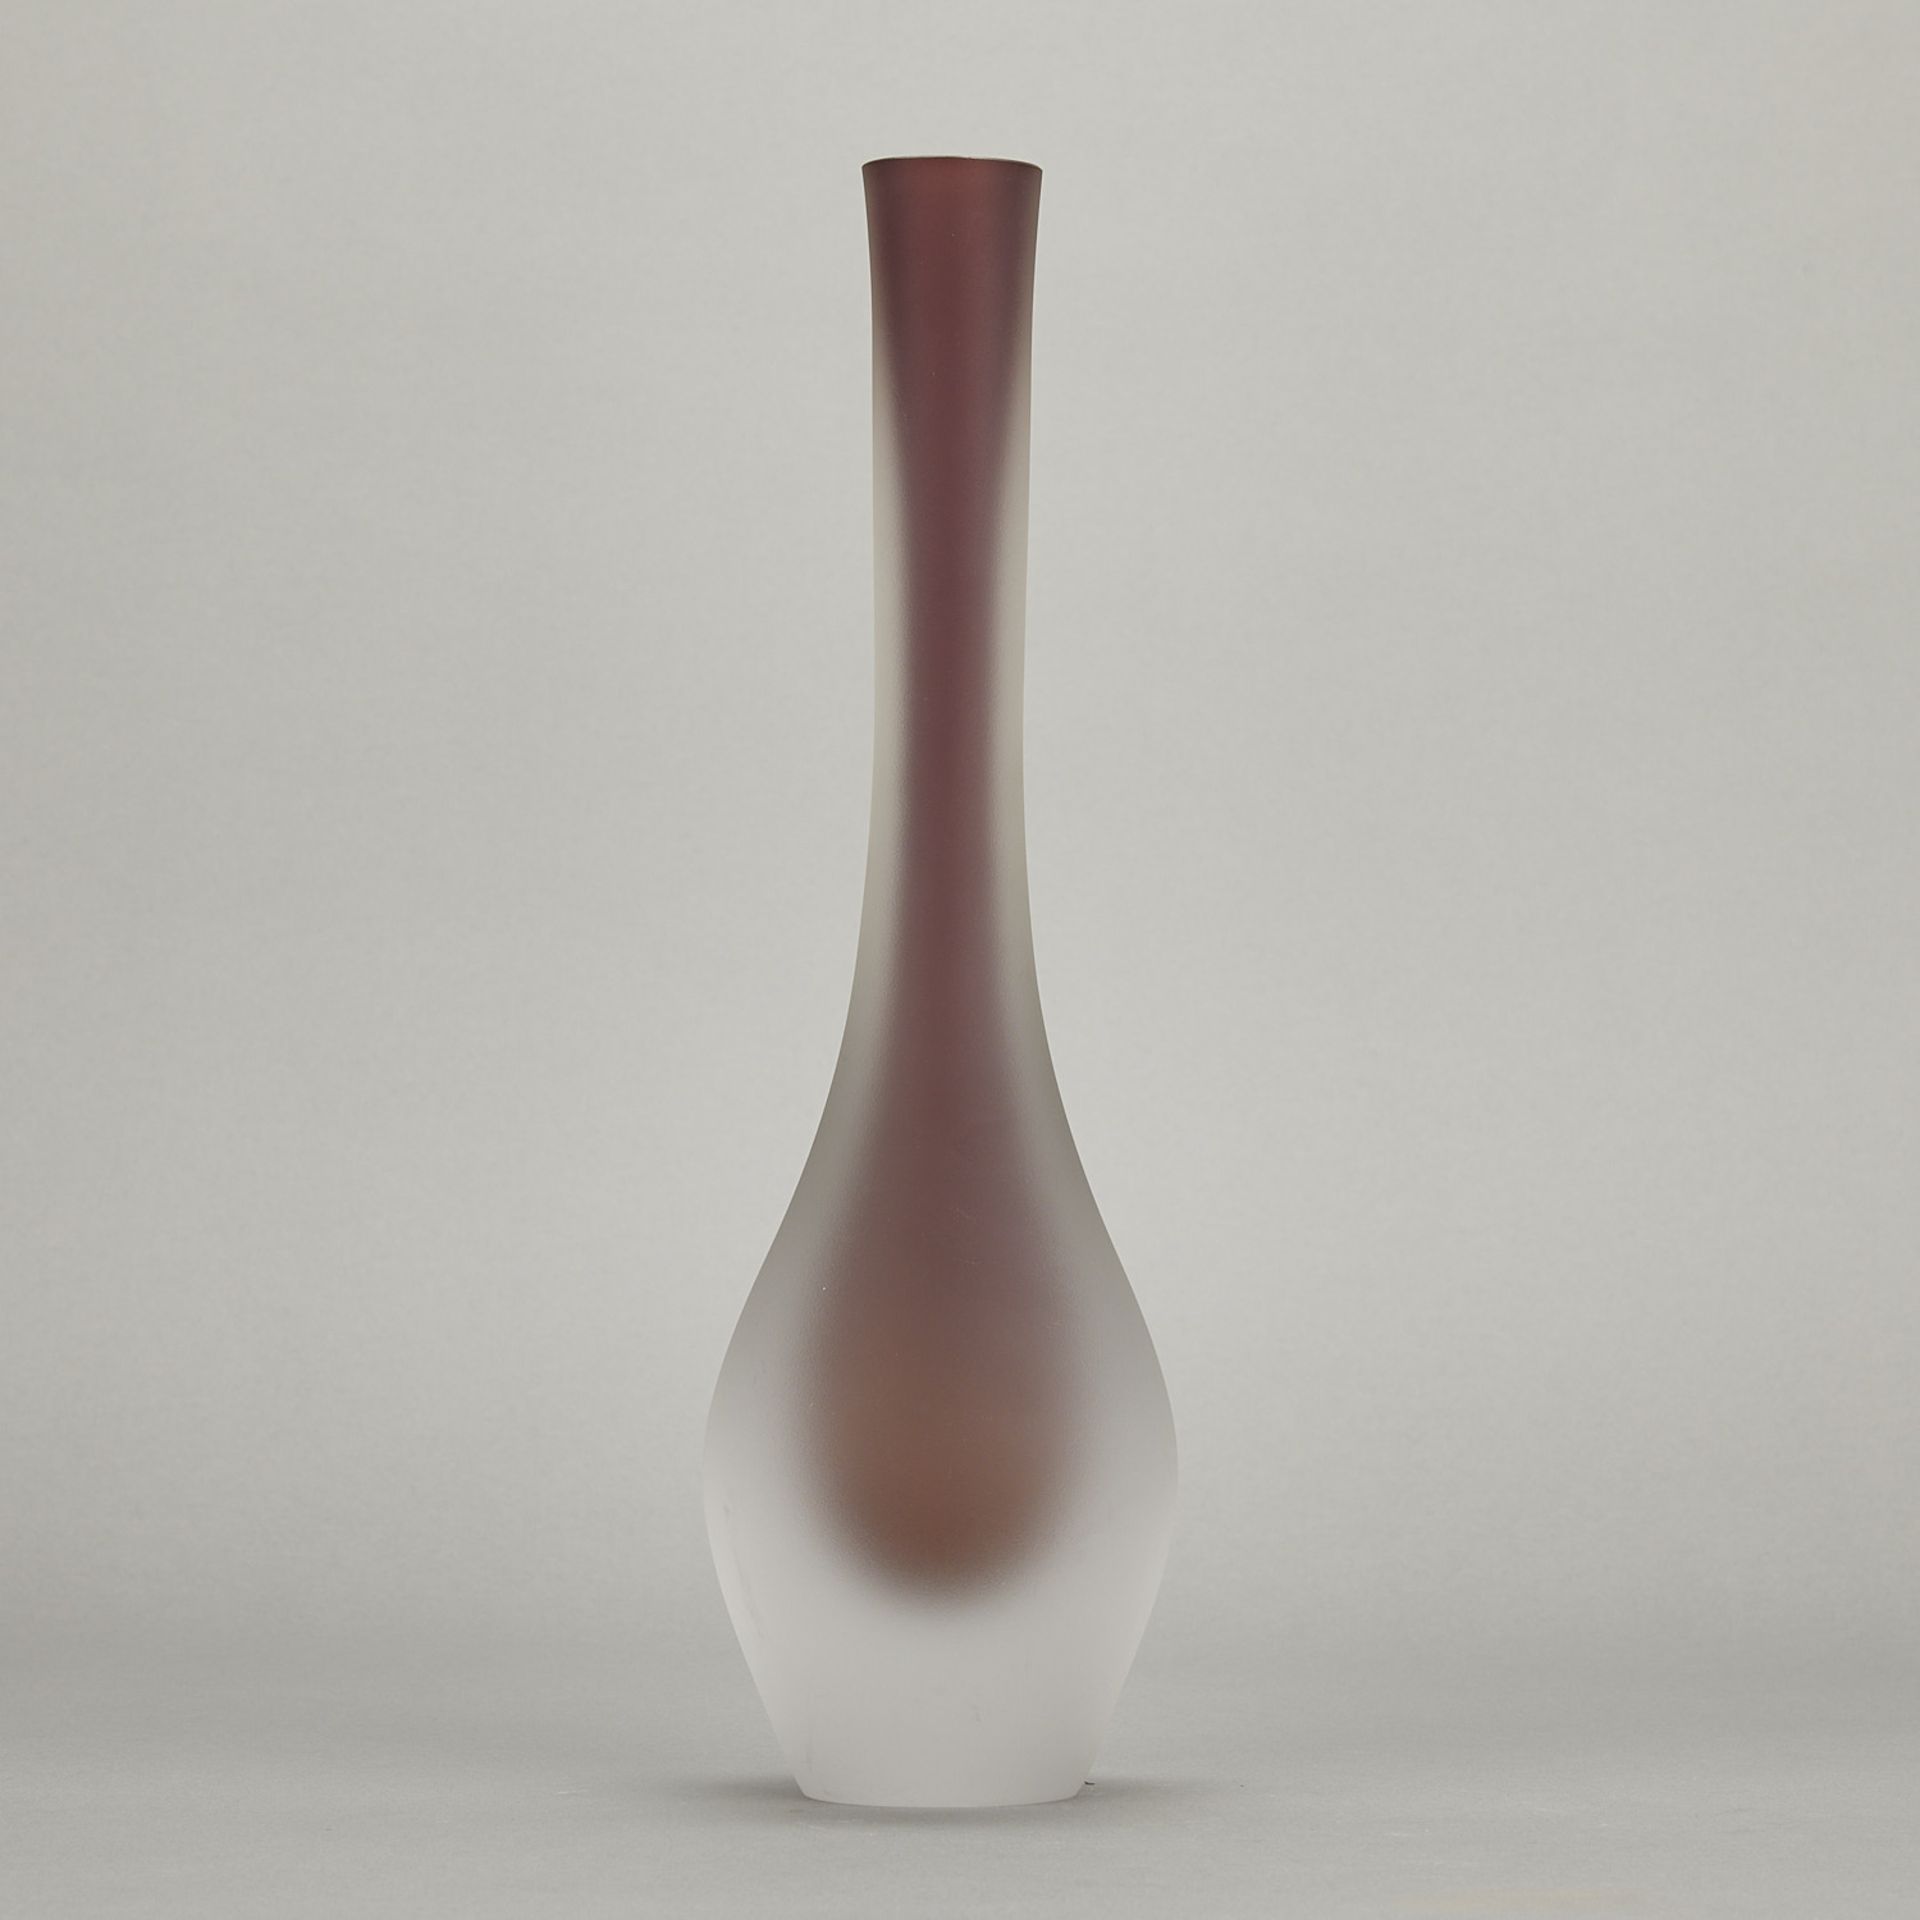 Panu Turunen & Kari Alakoski "Drop" Glass Vase - Image 4 of 8